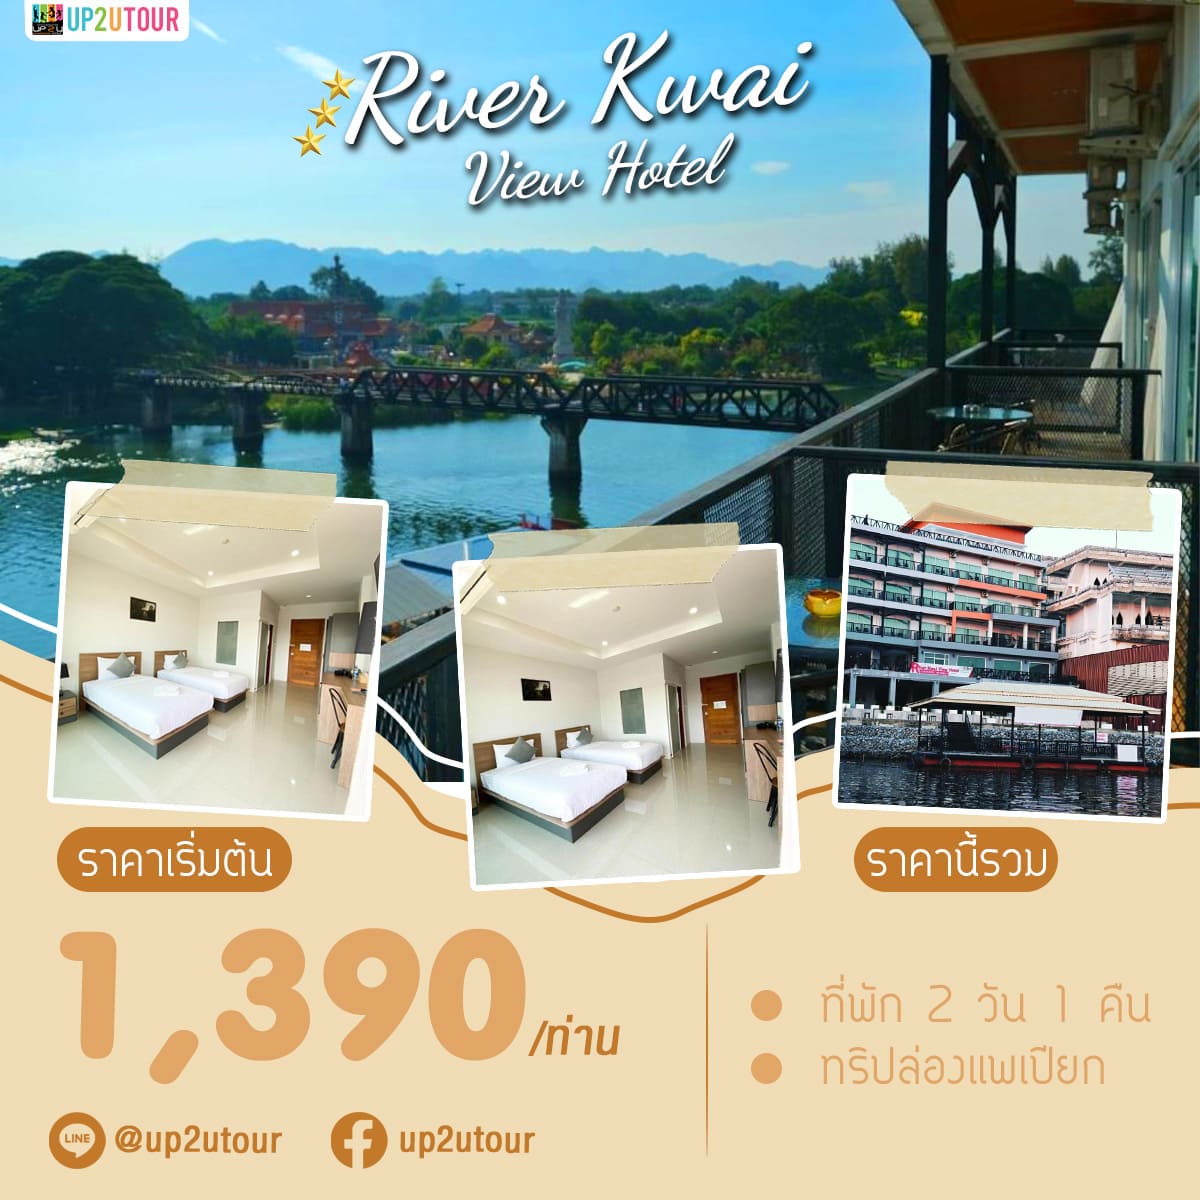 Rive Kwai Vie Hotel กาญจนบุรี ราคาเริ่มต้น 1,390 บาท/ท่าน